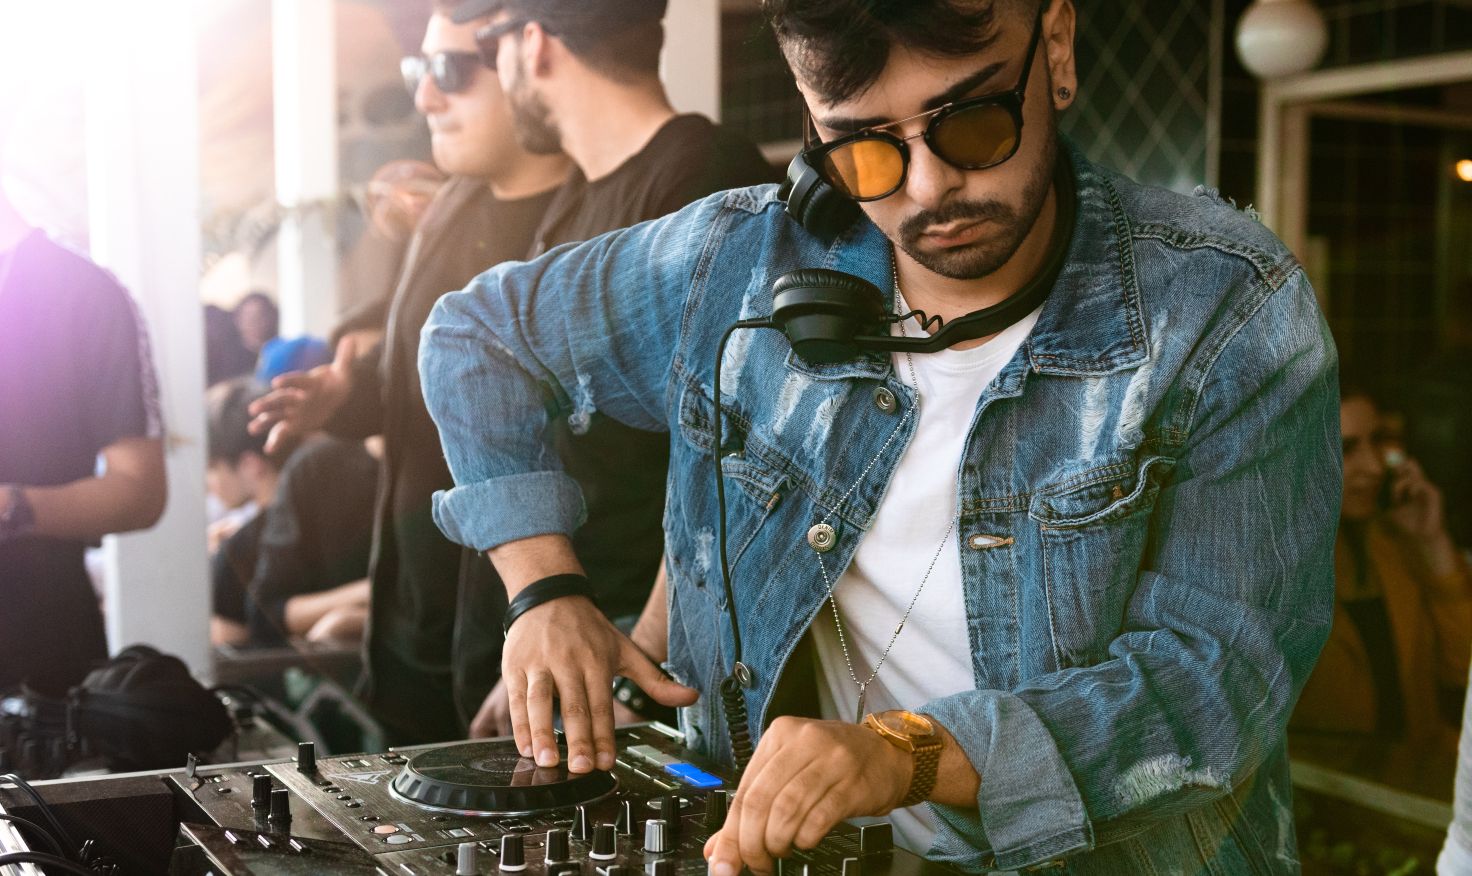 Guide complet de l'équipement DJ pour les débutants - Actualités - Pioneer  DJ Actualités